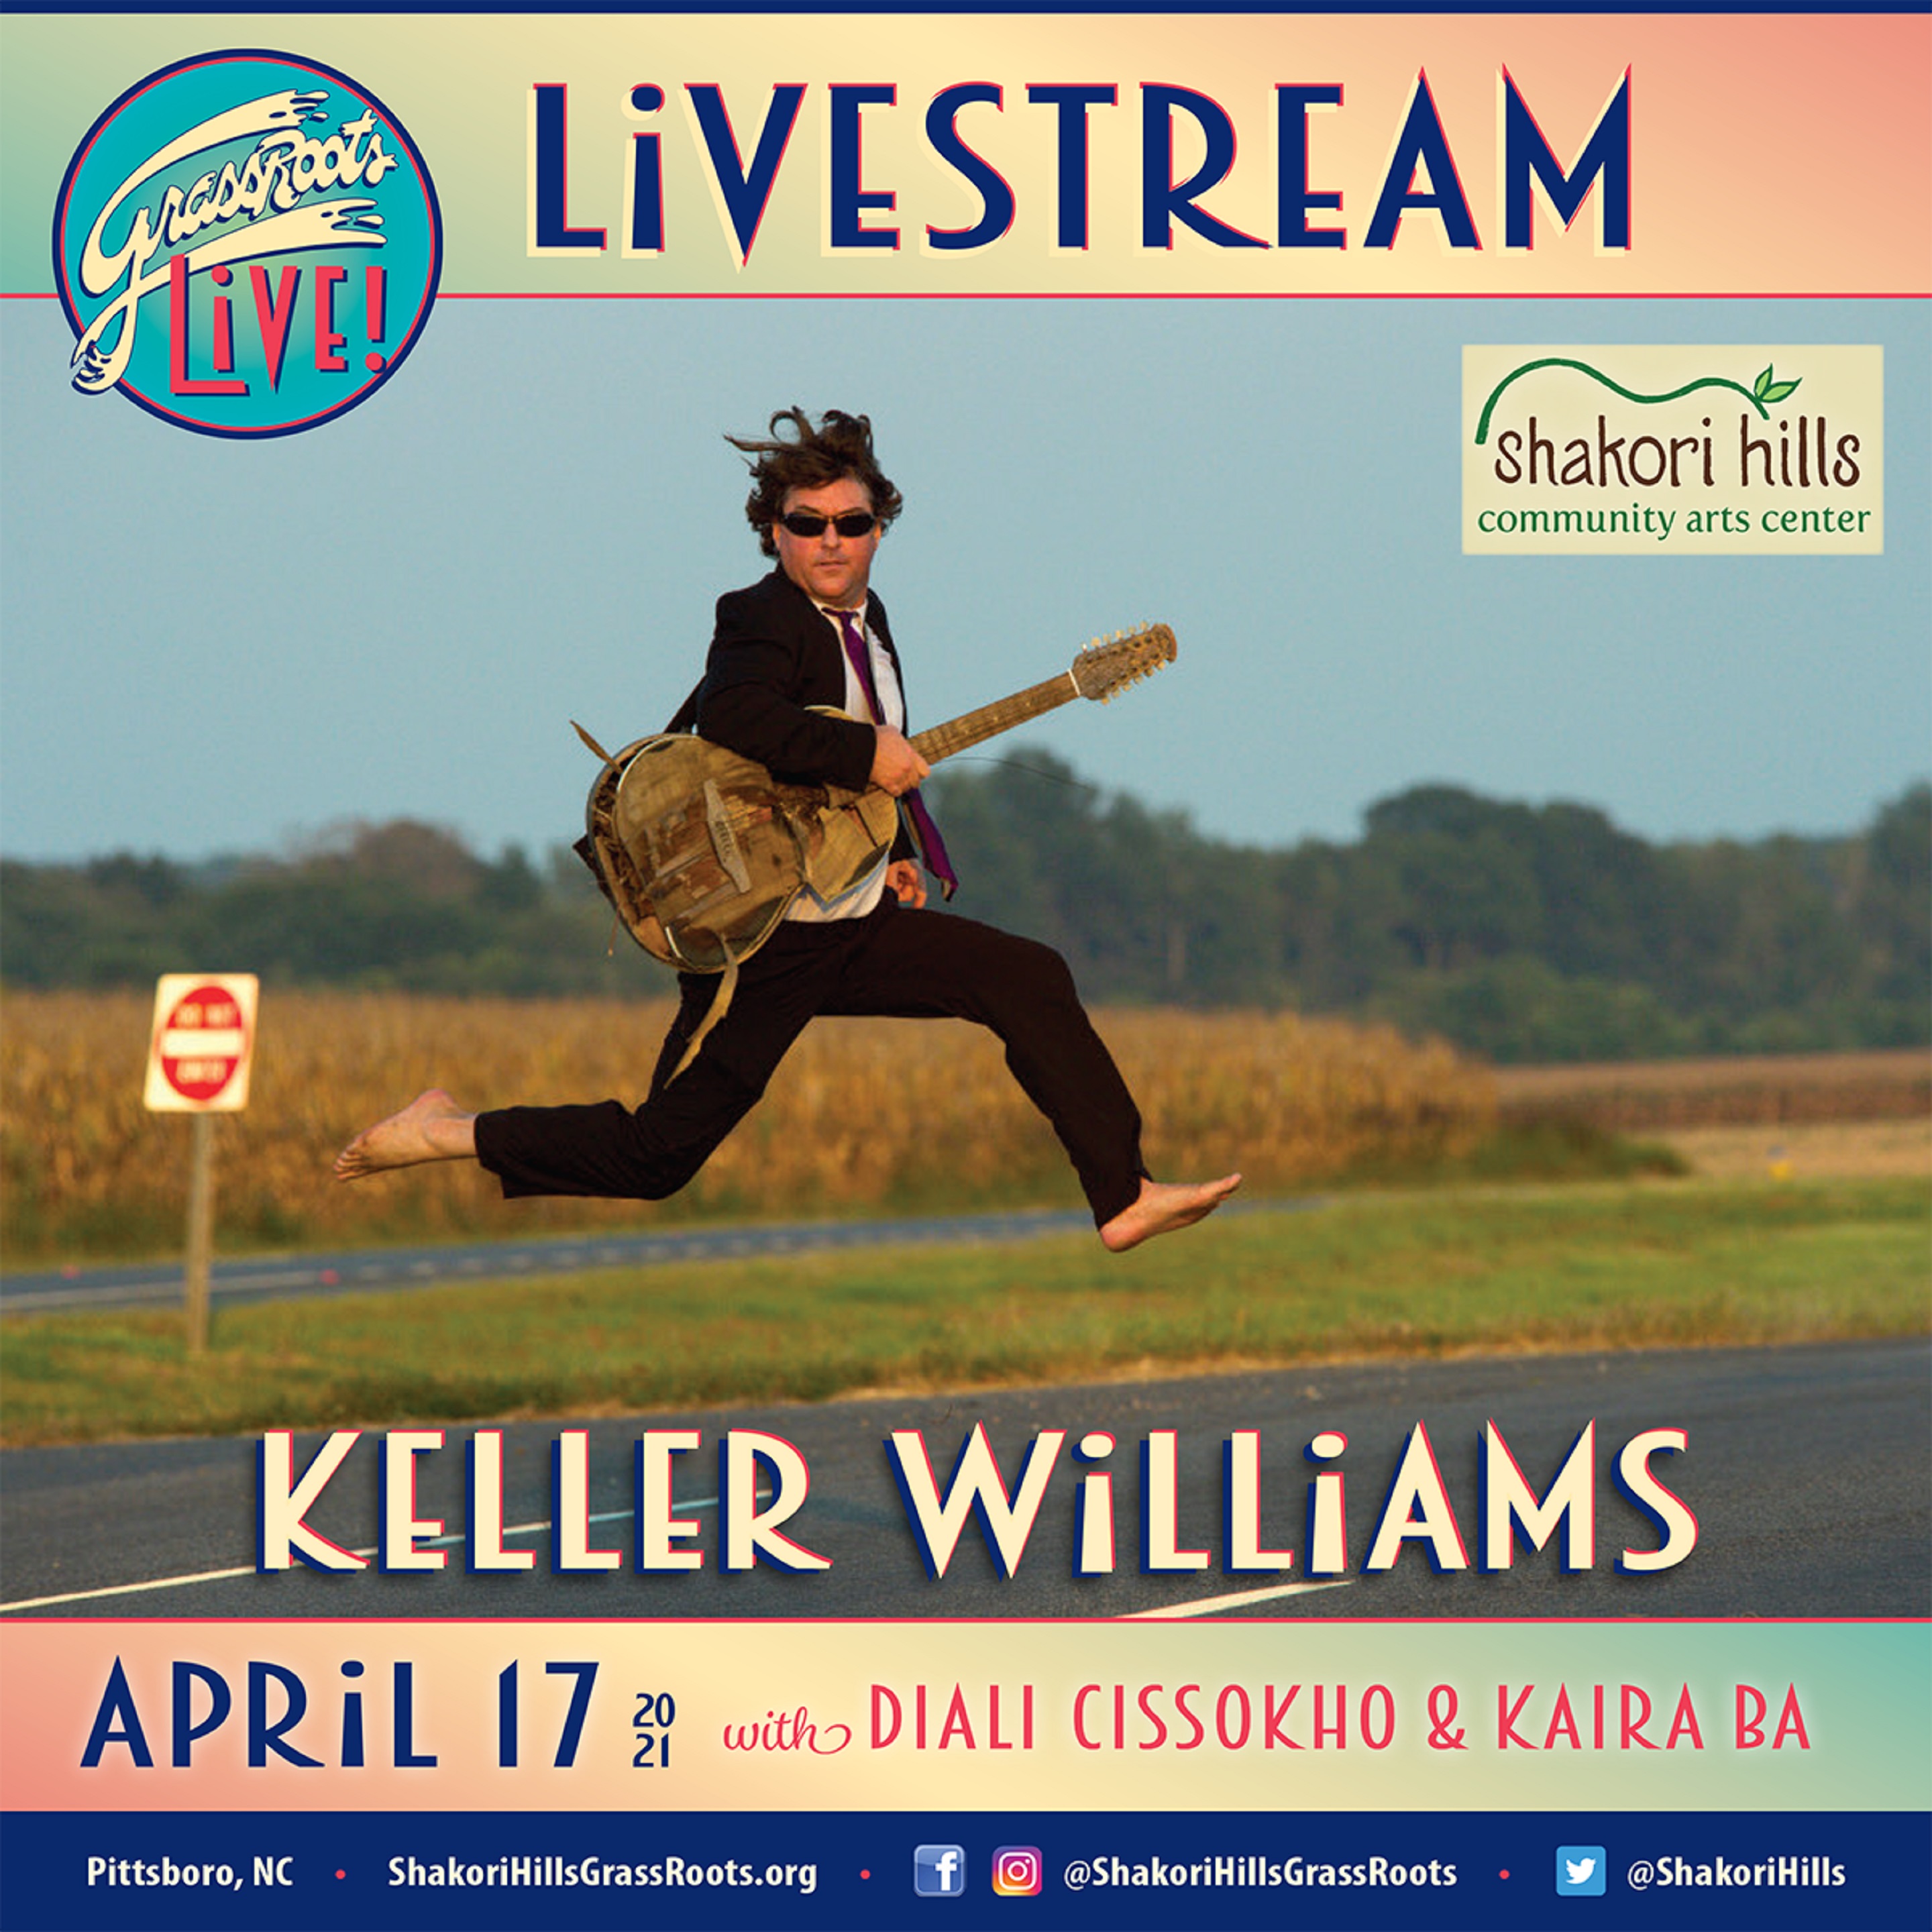 Keller Williams Livestream this Saturday!